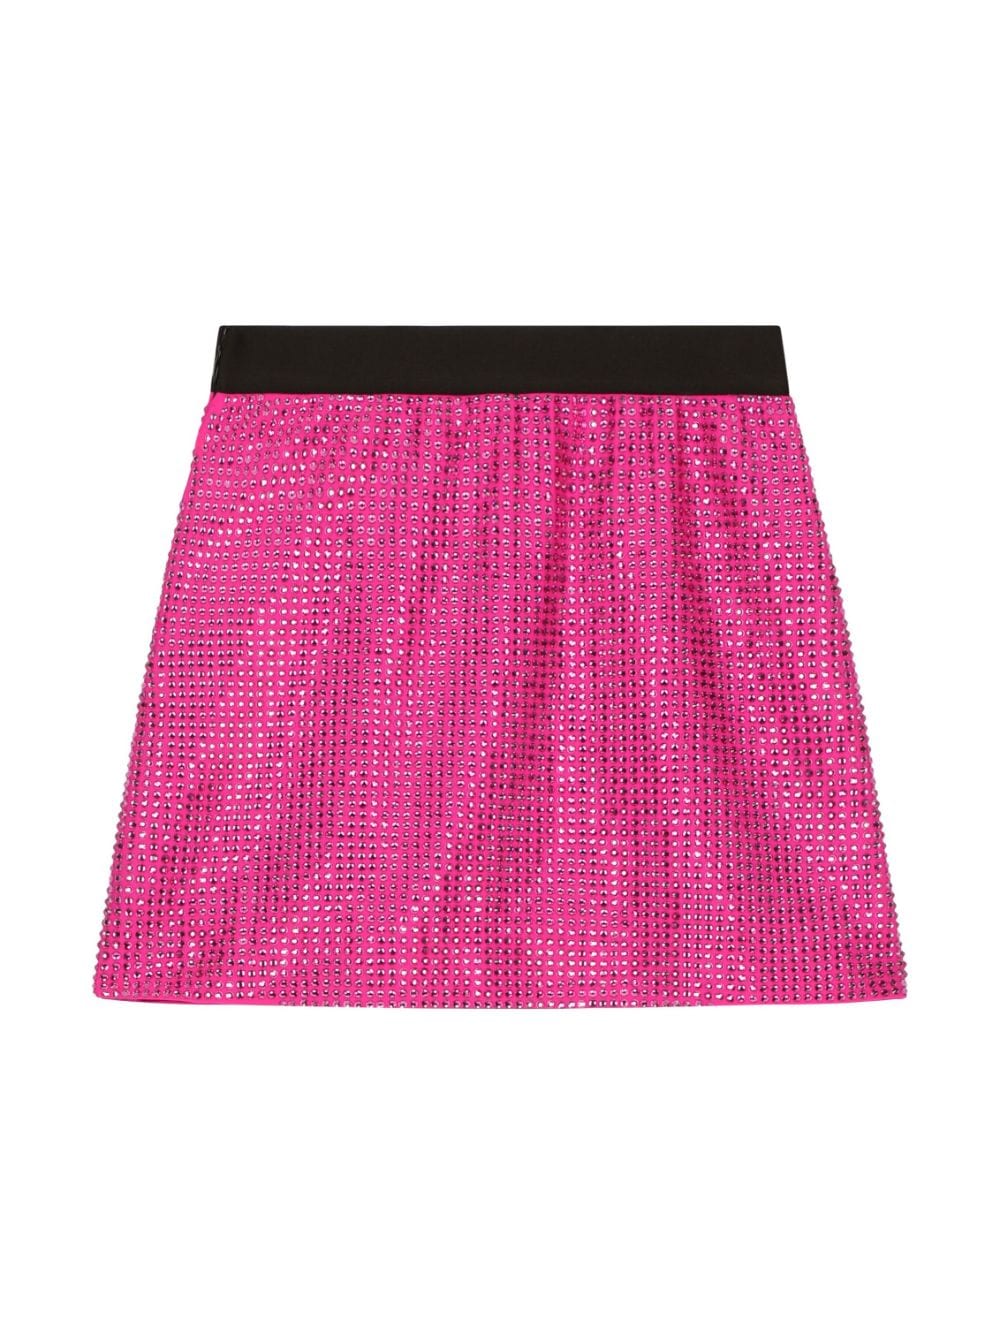 Fuchsia skirt for girls with rhinestones